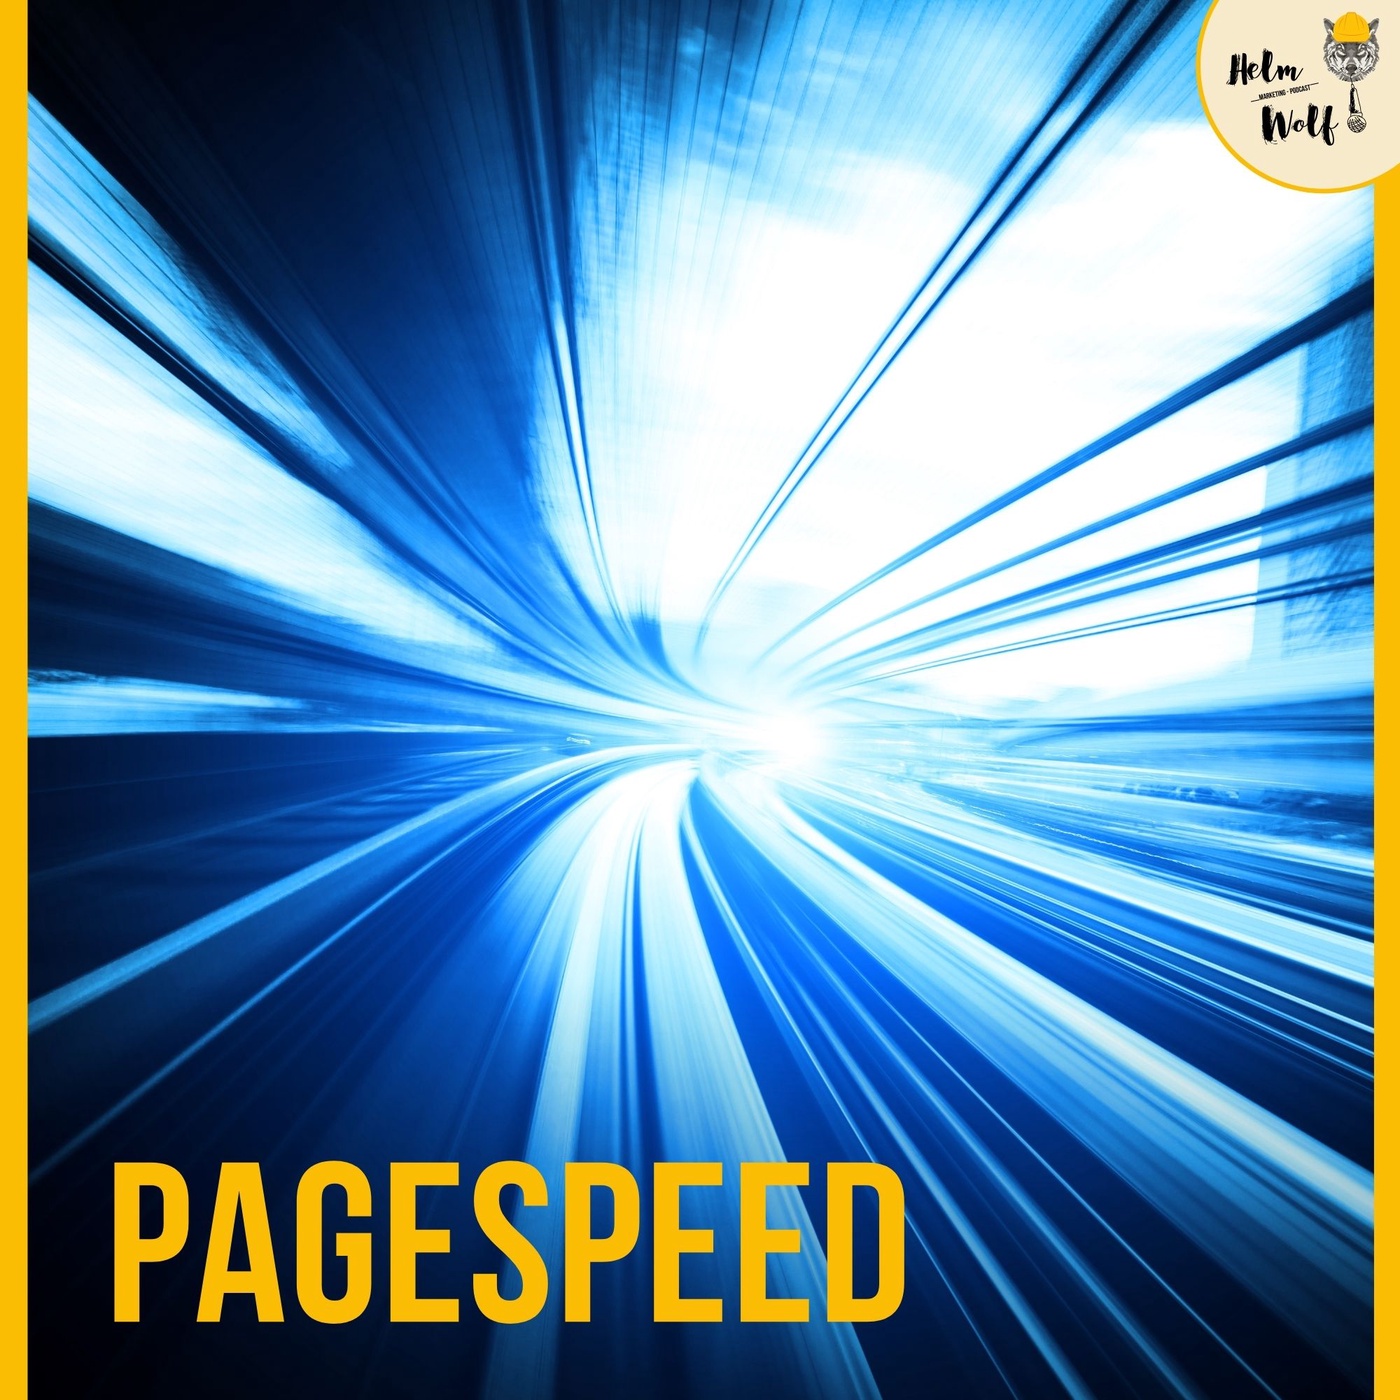 Pagespeed Optimierung - so boostest du die Geschwindigkeit deiner Webseite! | Helmwolf Marketing Podcast #109